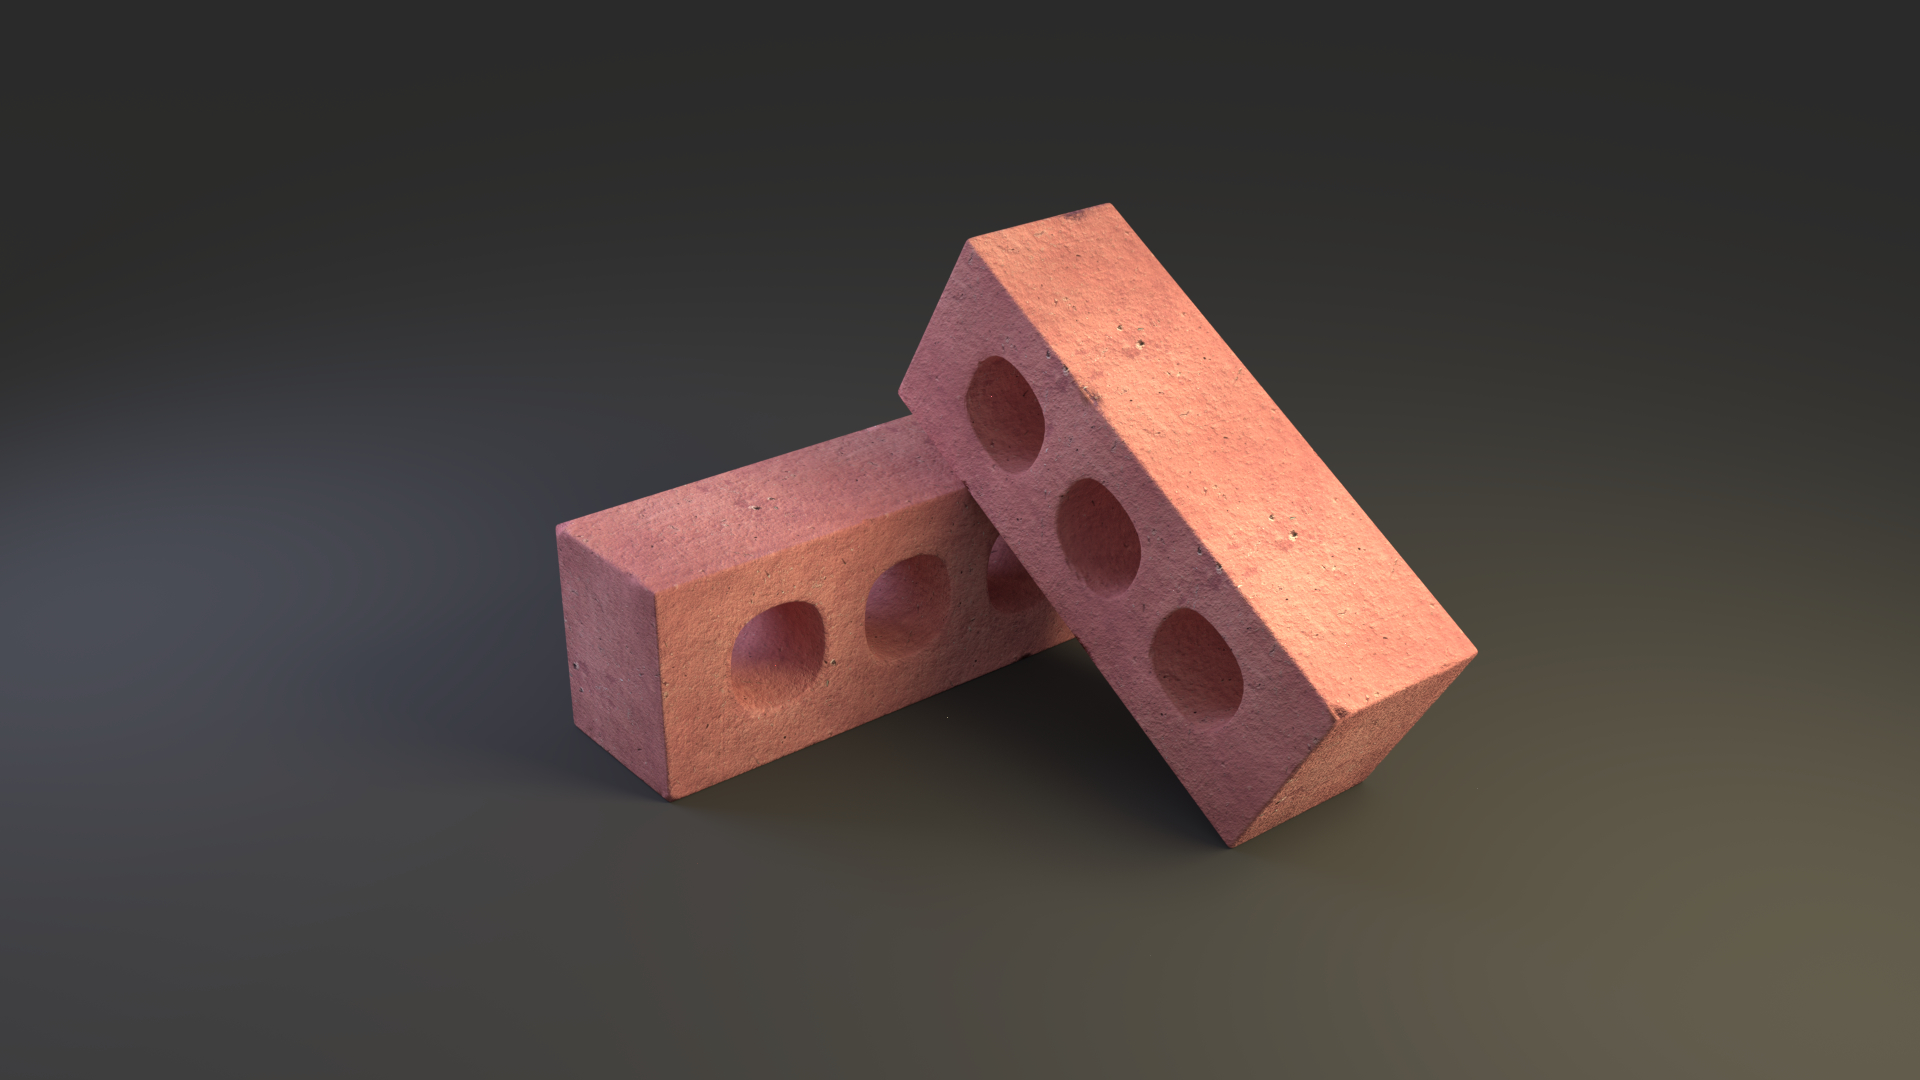 brick 3D model https://static.turbosquid.com/Preview/001289/646/2T/_D.jpg